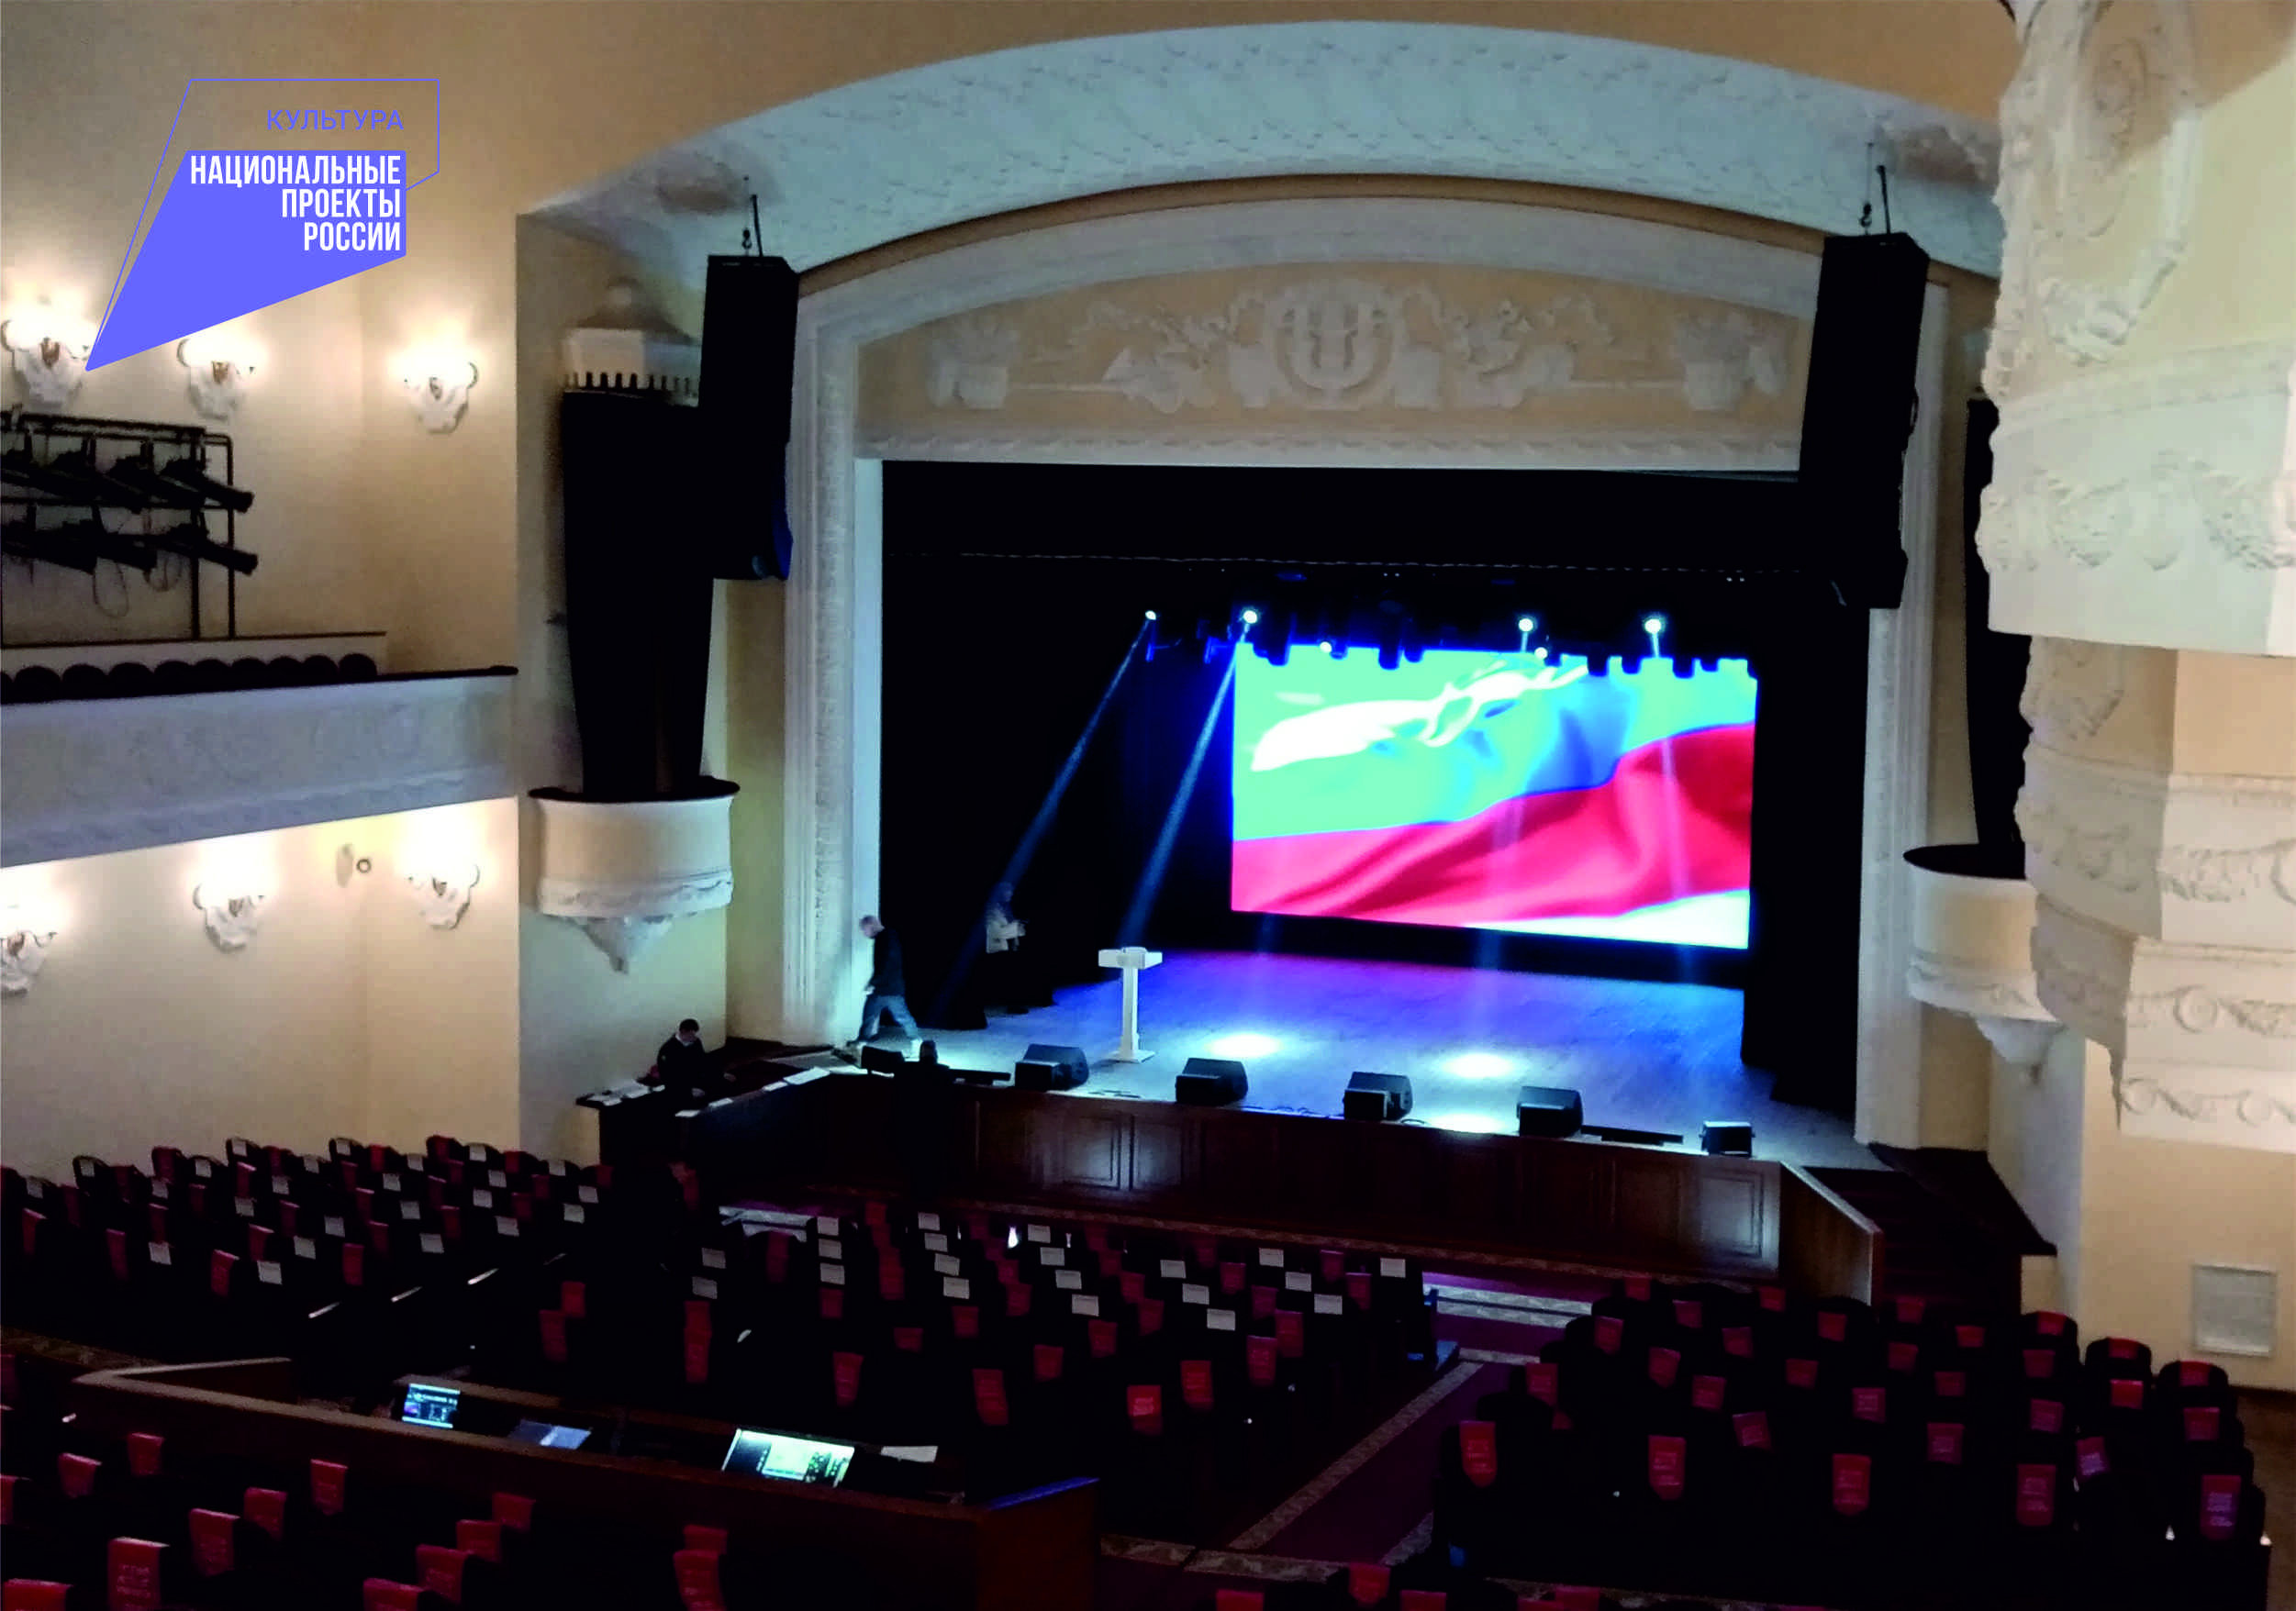 Во Дворце культуры БМЗ в Брянске установили новый светодиодный экран